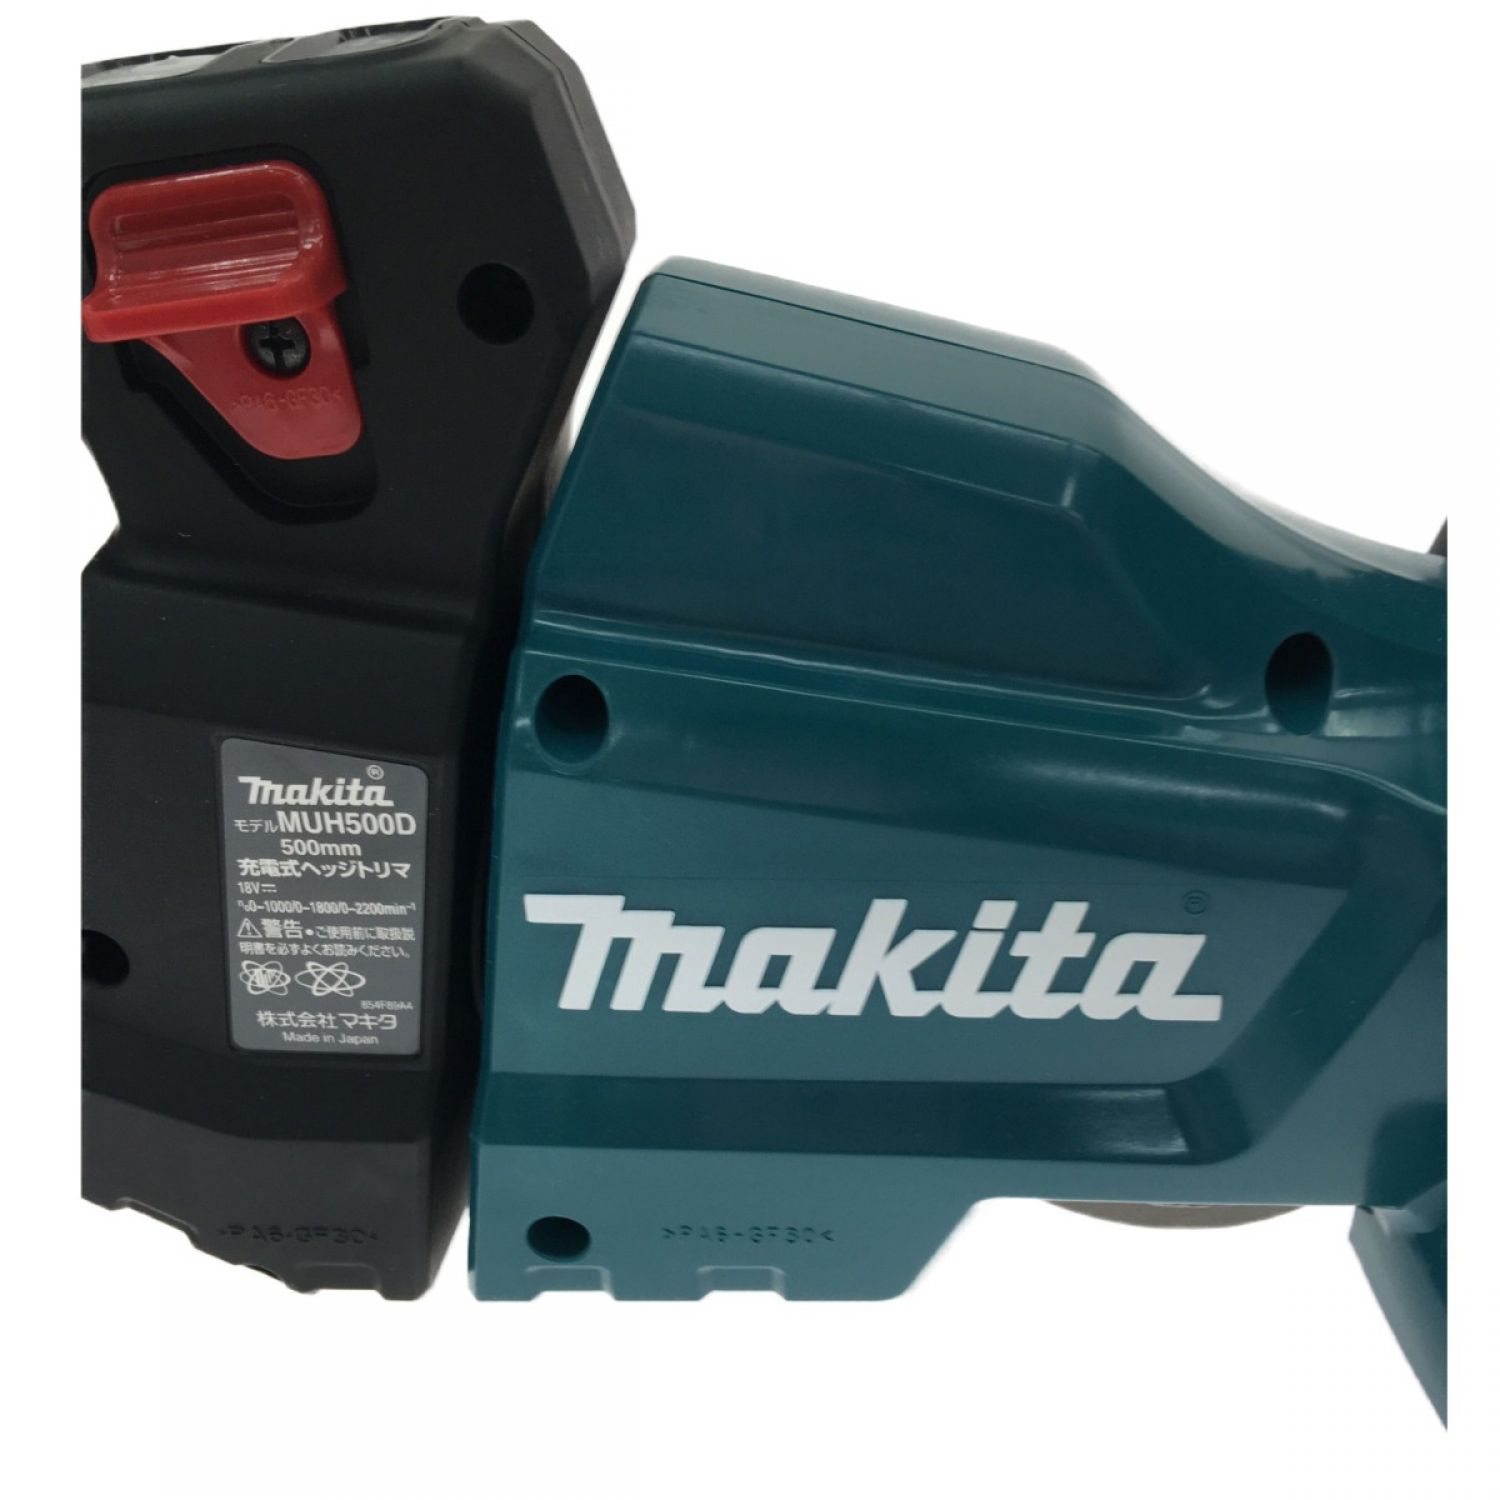  マキタ makita  40V 充電式ヘッジトリマ  刈込み幅500mm  MUH010GZ (片刃式) 本体のみ - 5